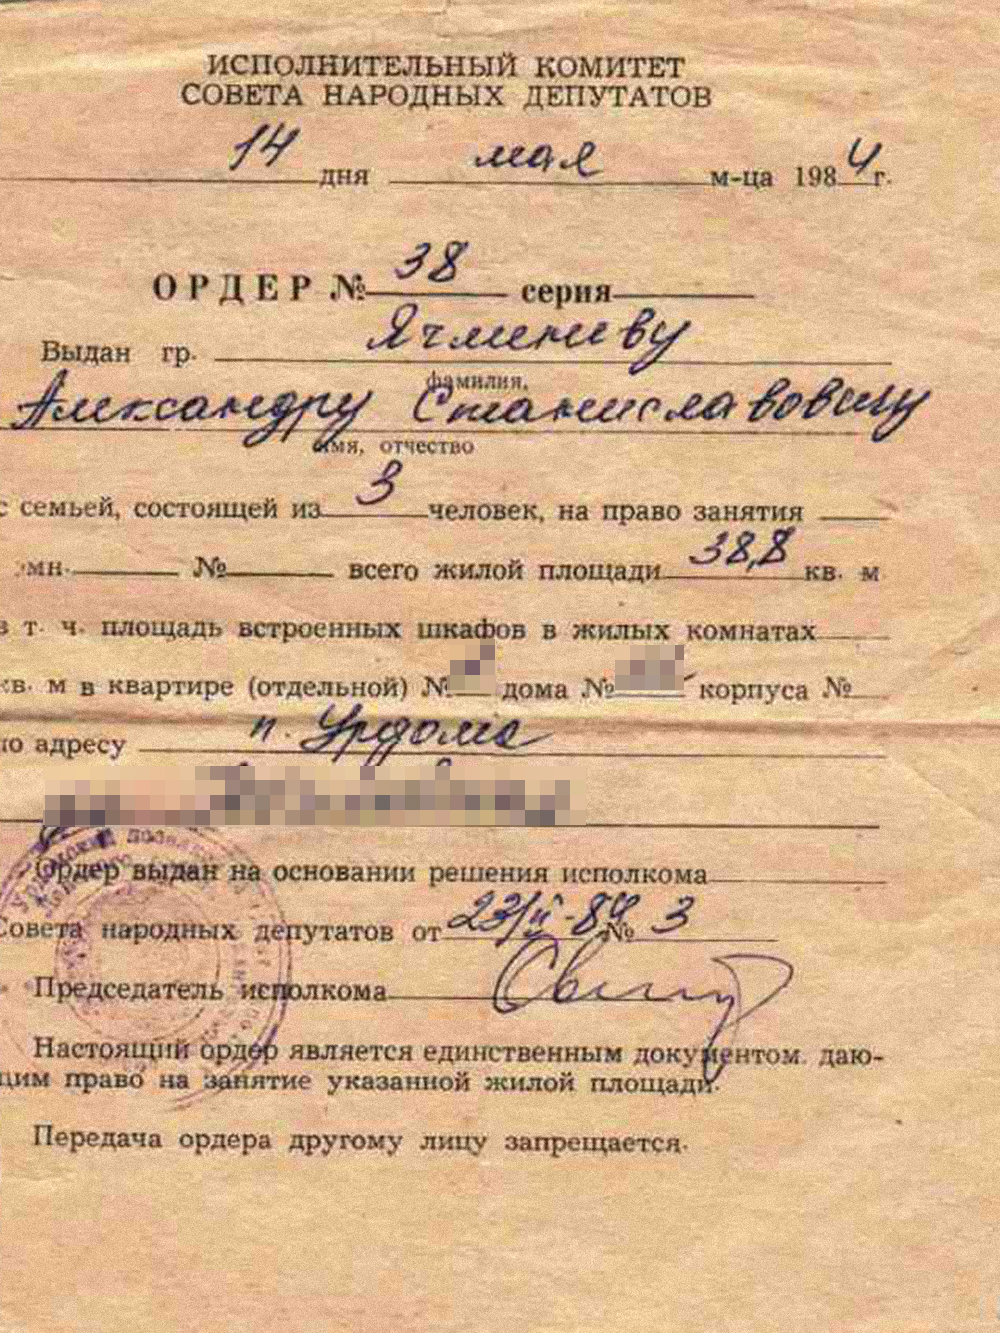 Примерно так в СССР выглядели ордеры на жилое помещение. Источник: urdoma.info